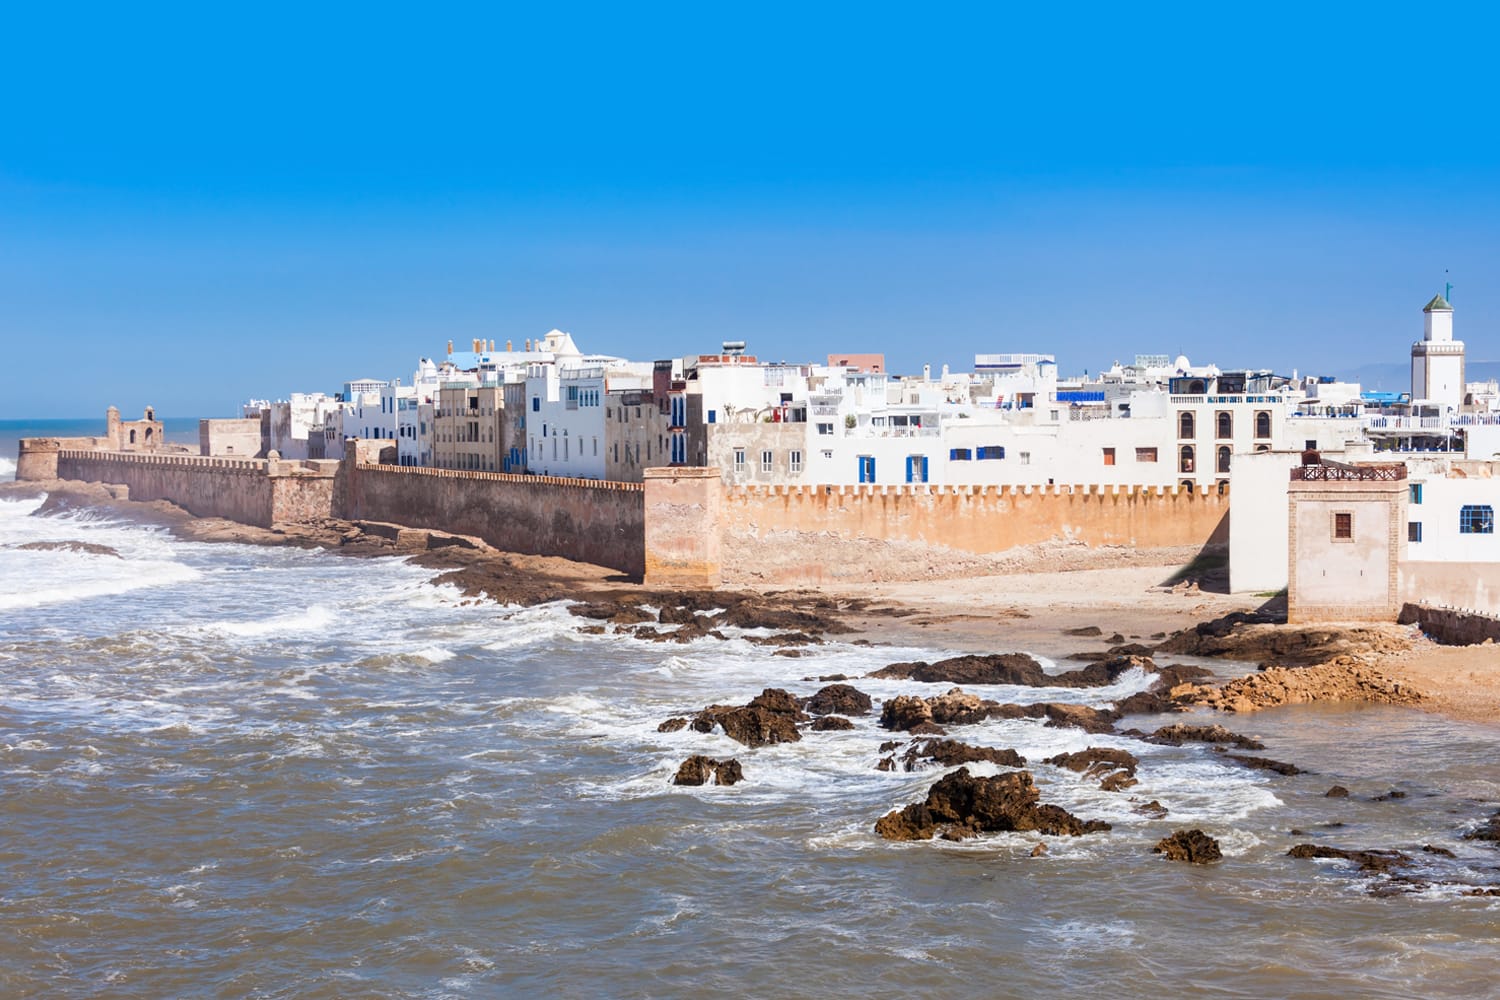 Essaouira Ramparts pemandangan panorama udara di Essaouira, Maroko.  Essaouira adalah sebuah kota di wilayah Maroko barat di pantai Atlantik.